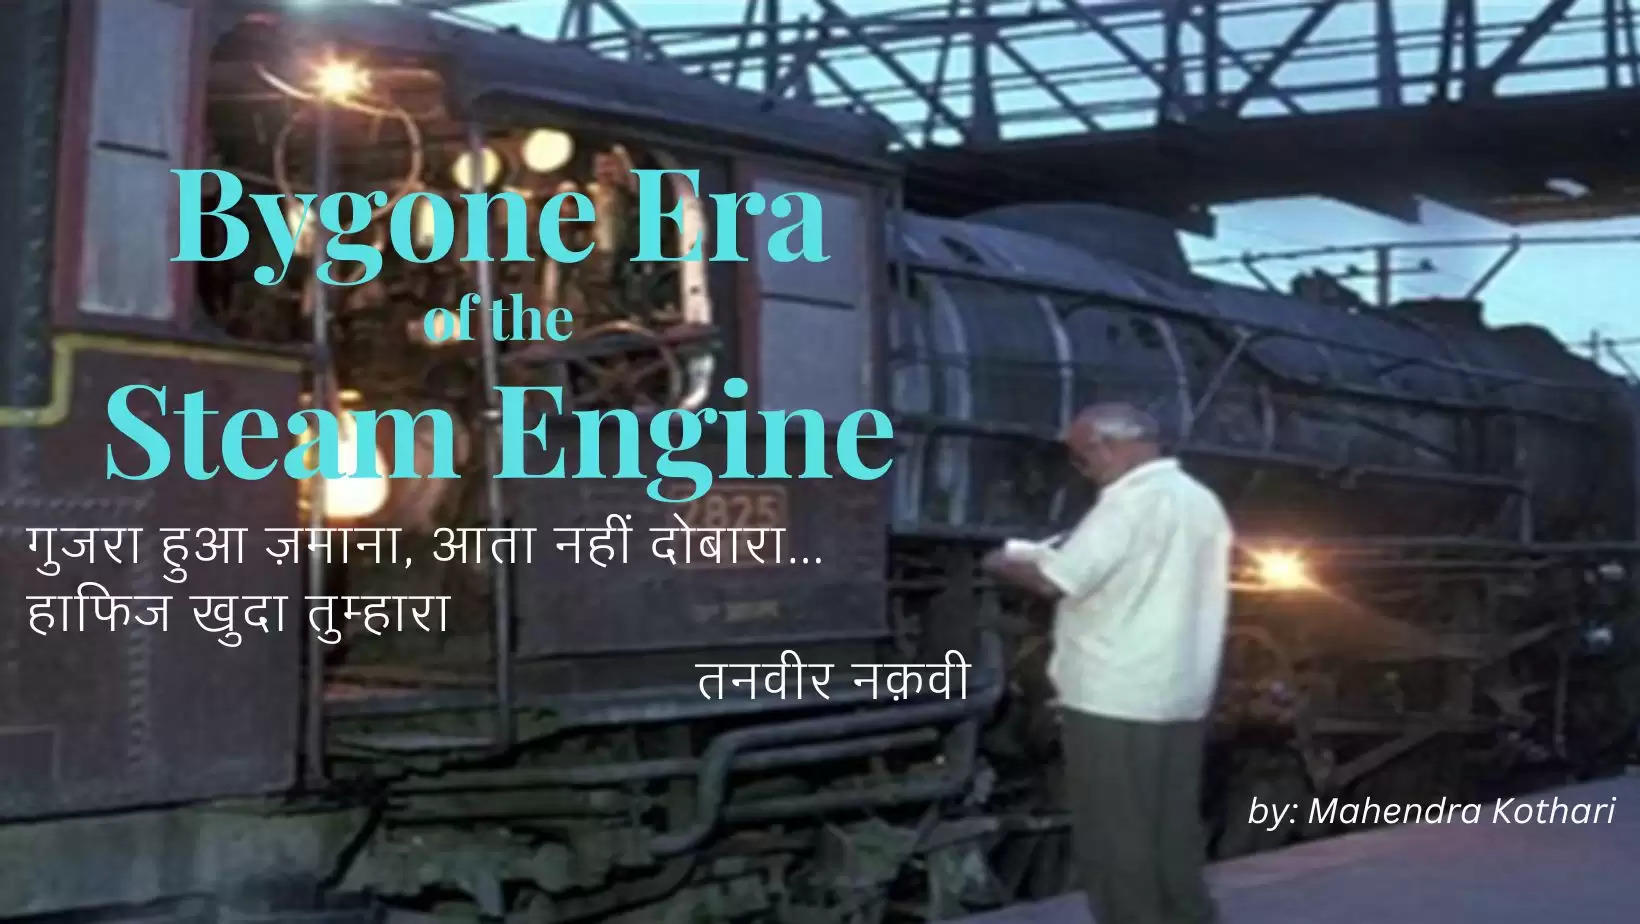 गुजरा हुआ जमाना आता नहीं  दोबारा  हाफिज खुदा तुम्हारा             “तनवीर नक़वी" Bygone Era of the Steam Engine History of Locomotive in Udaipur